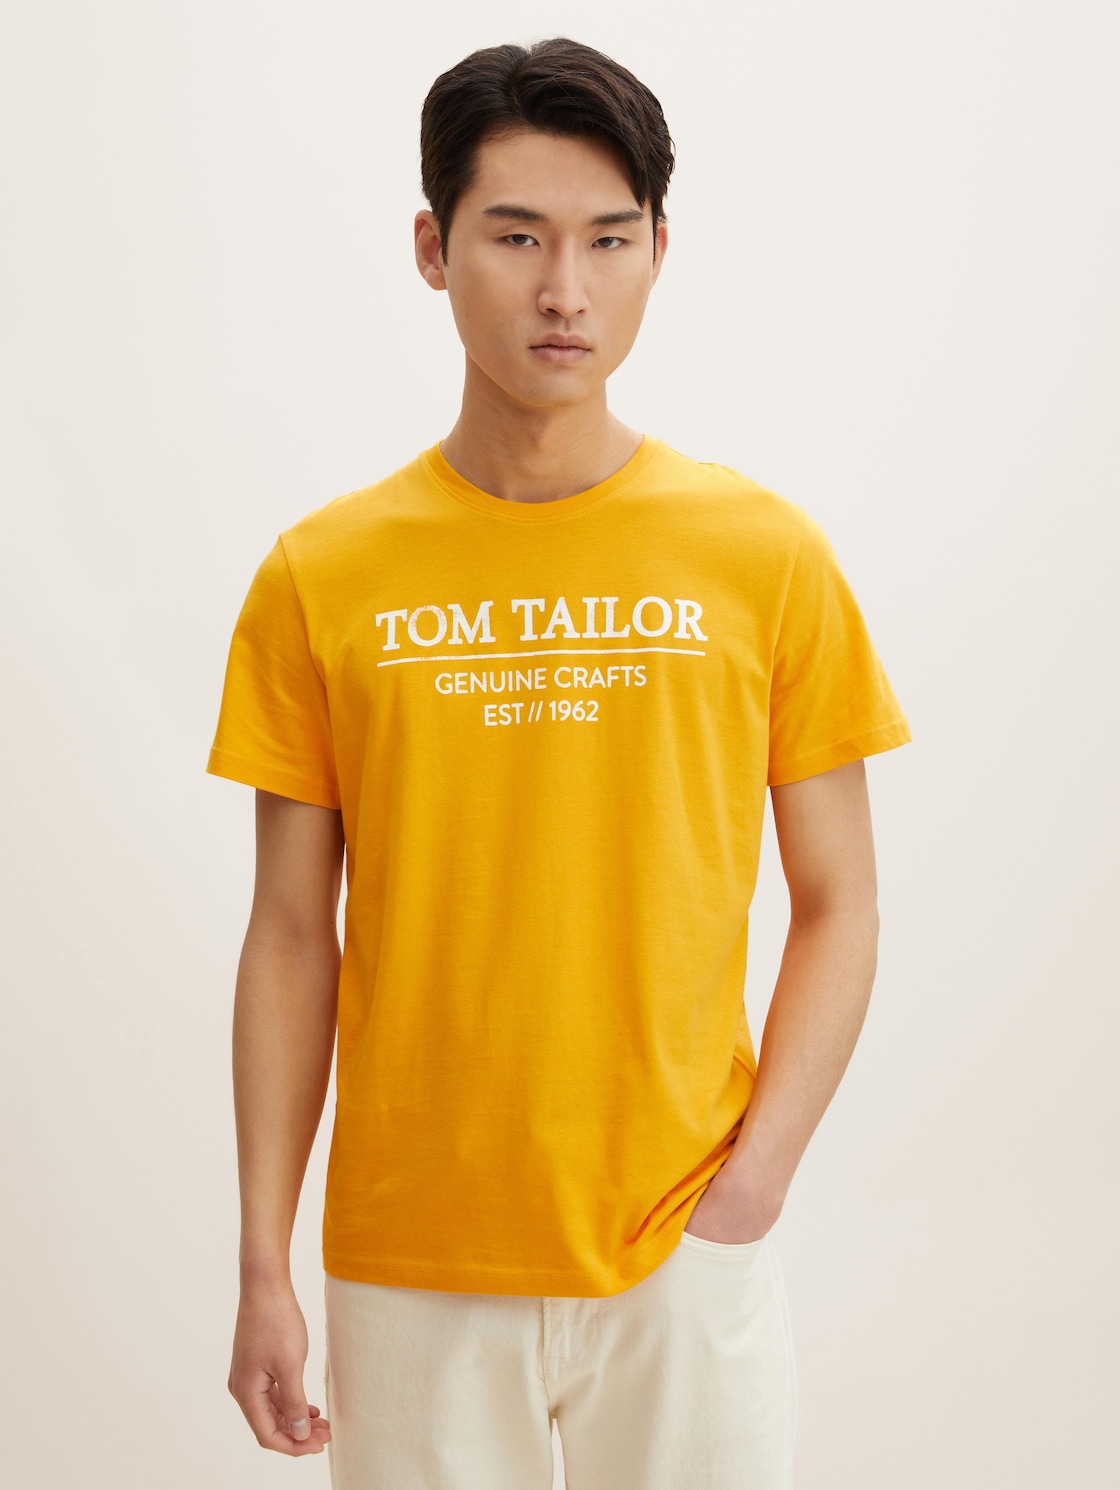 TOM TAILOR Herren T-Shirt mit Bio-Baumwolle, gelb, Logo Print, Gr. XXL,